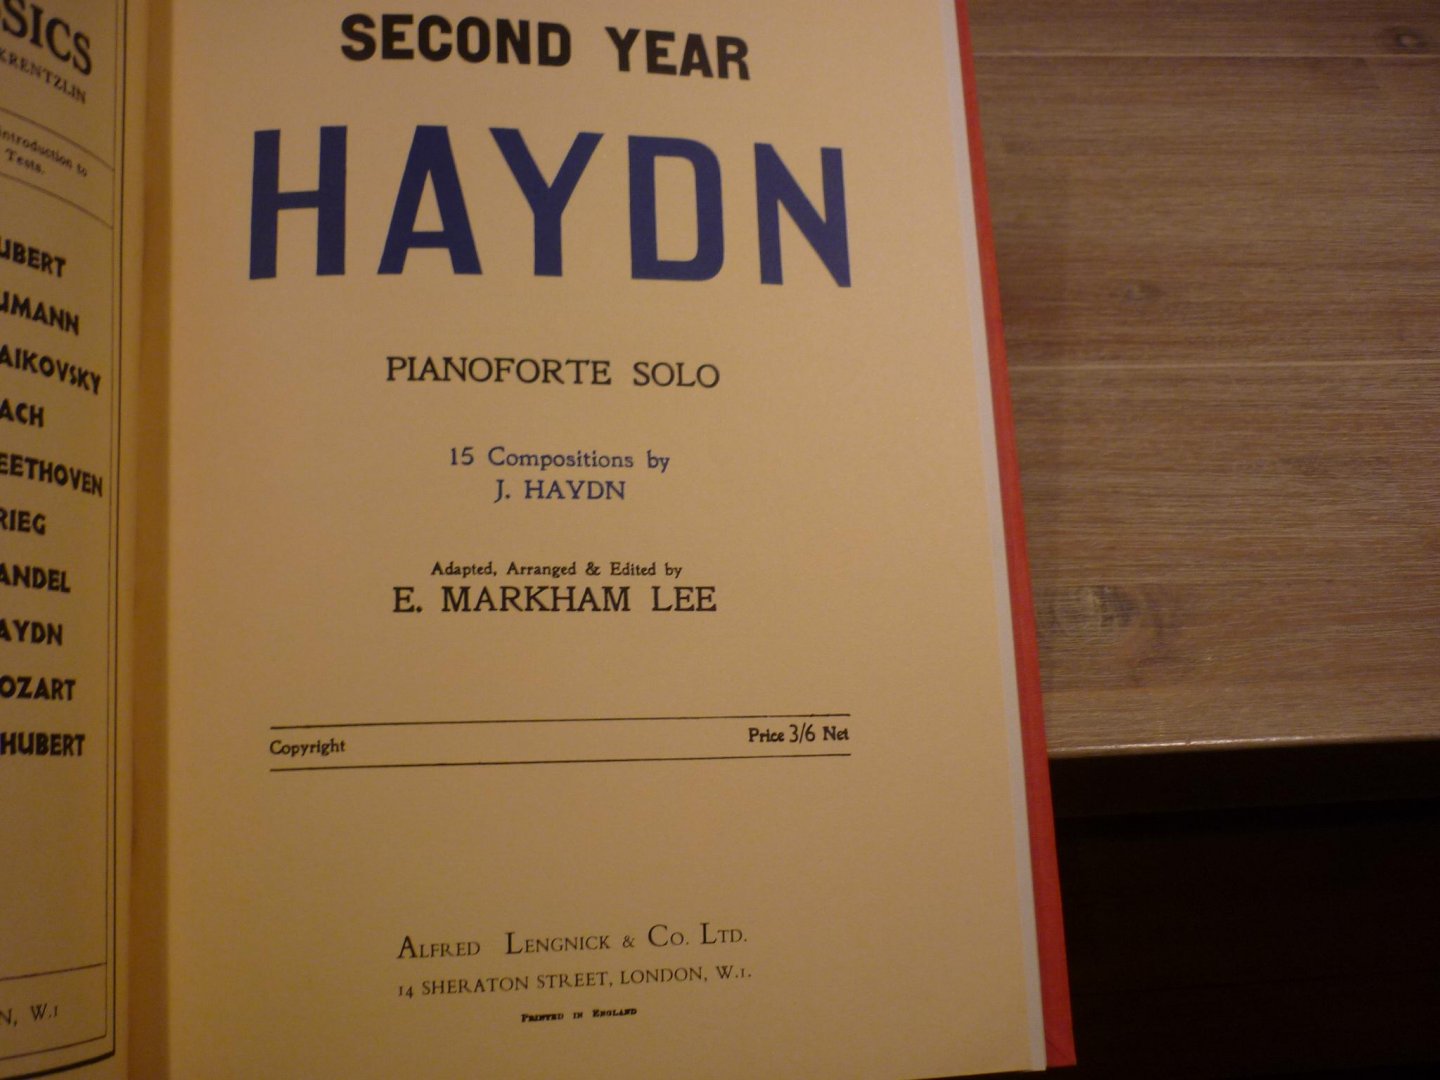 Haydn en Mozart - First Year Haydn  //  Second Year Haydn  //  First Year Mozart  // Second Year Mozart